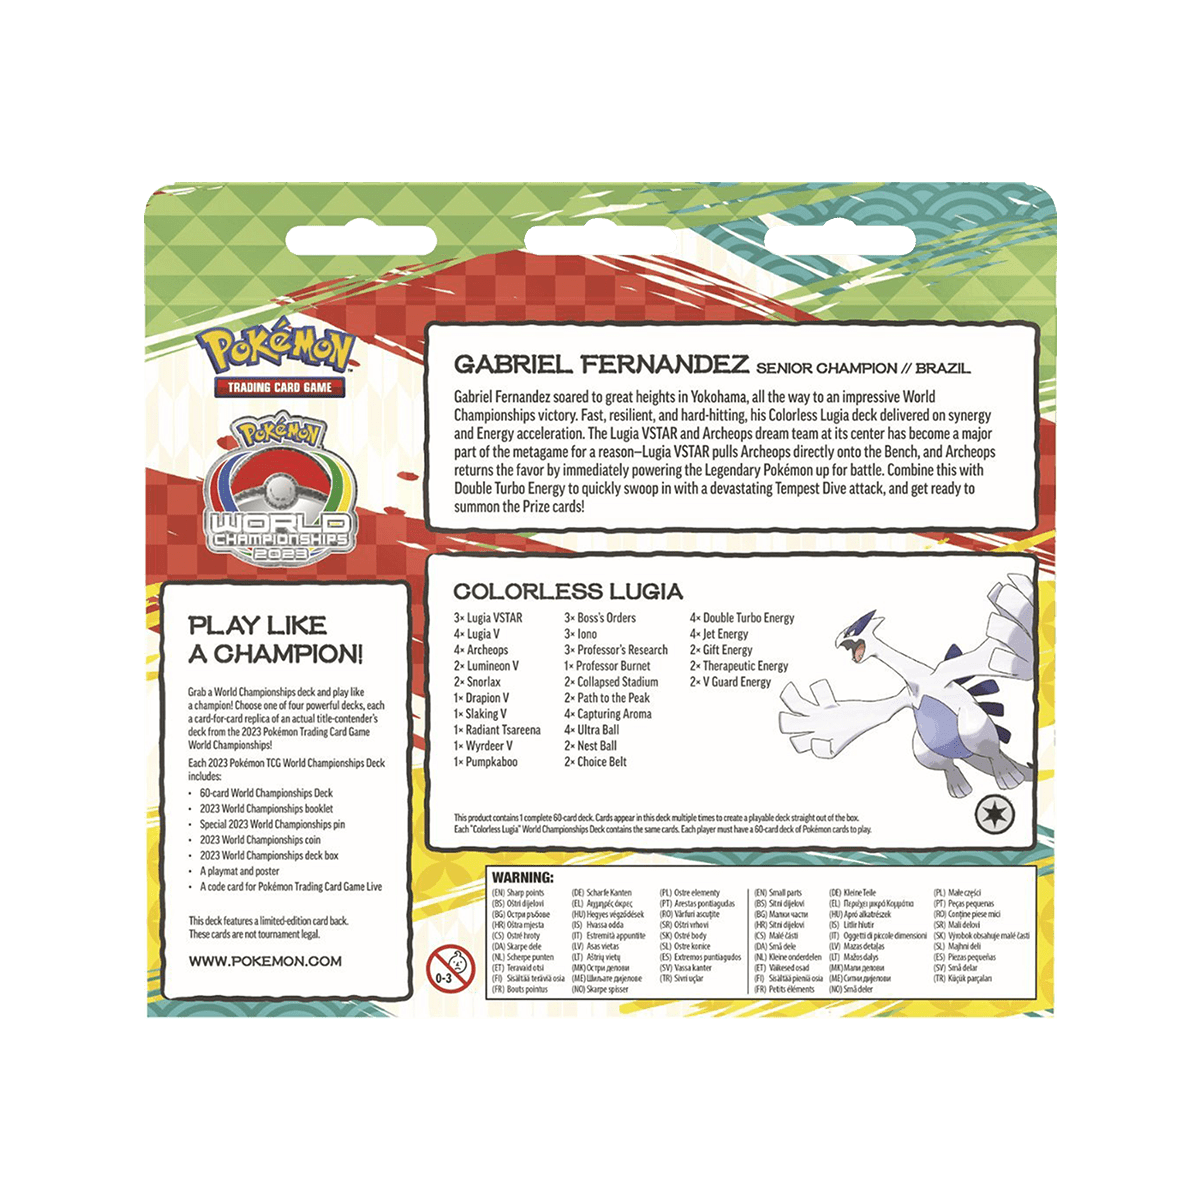 Pokémon TCG - 2023 World Championship Deck - Cardmaniac.ch